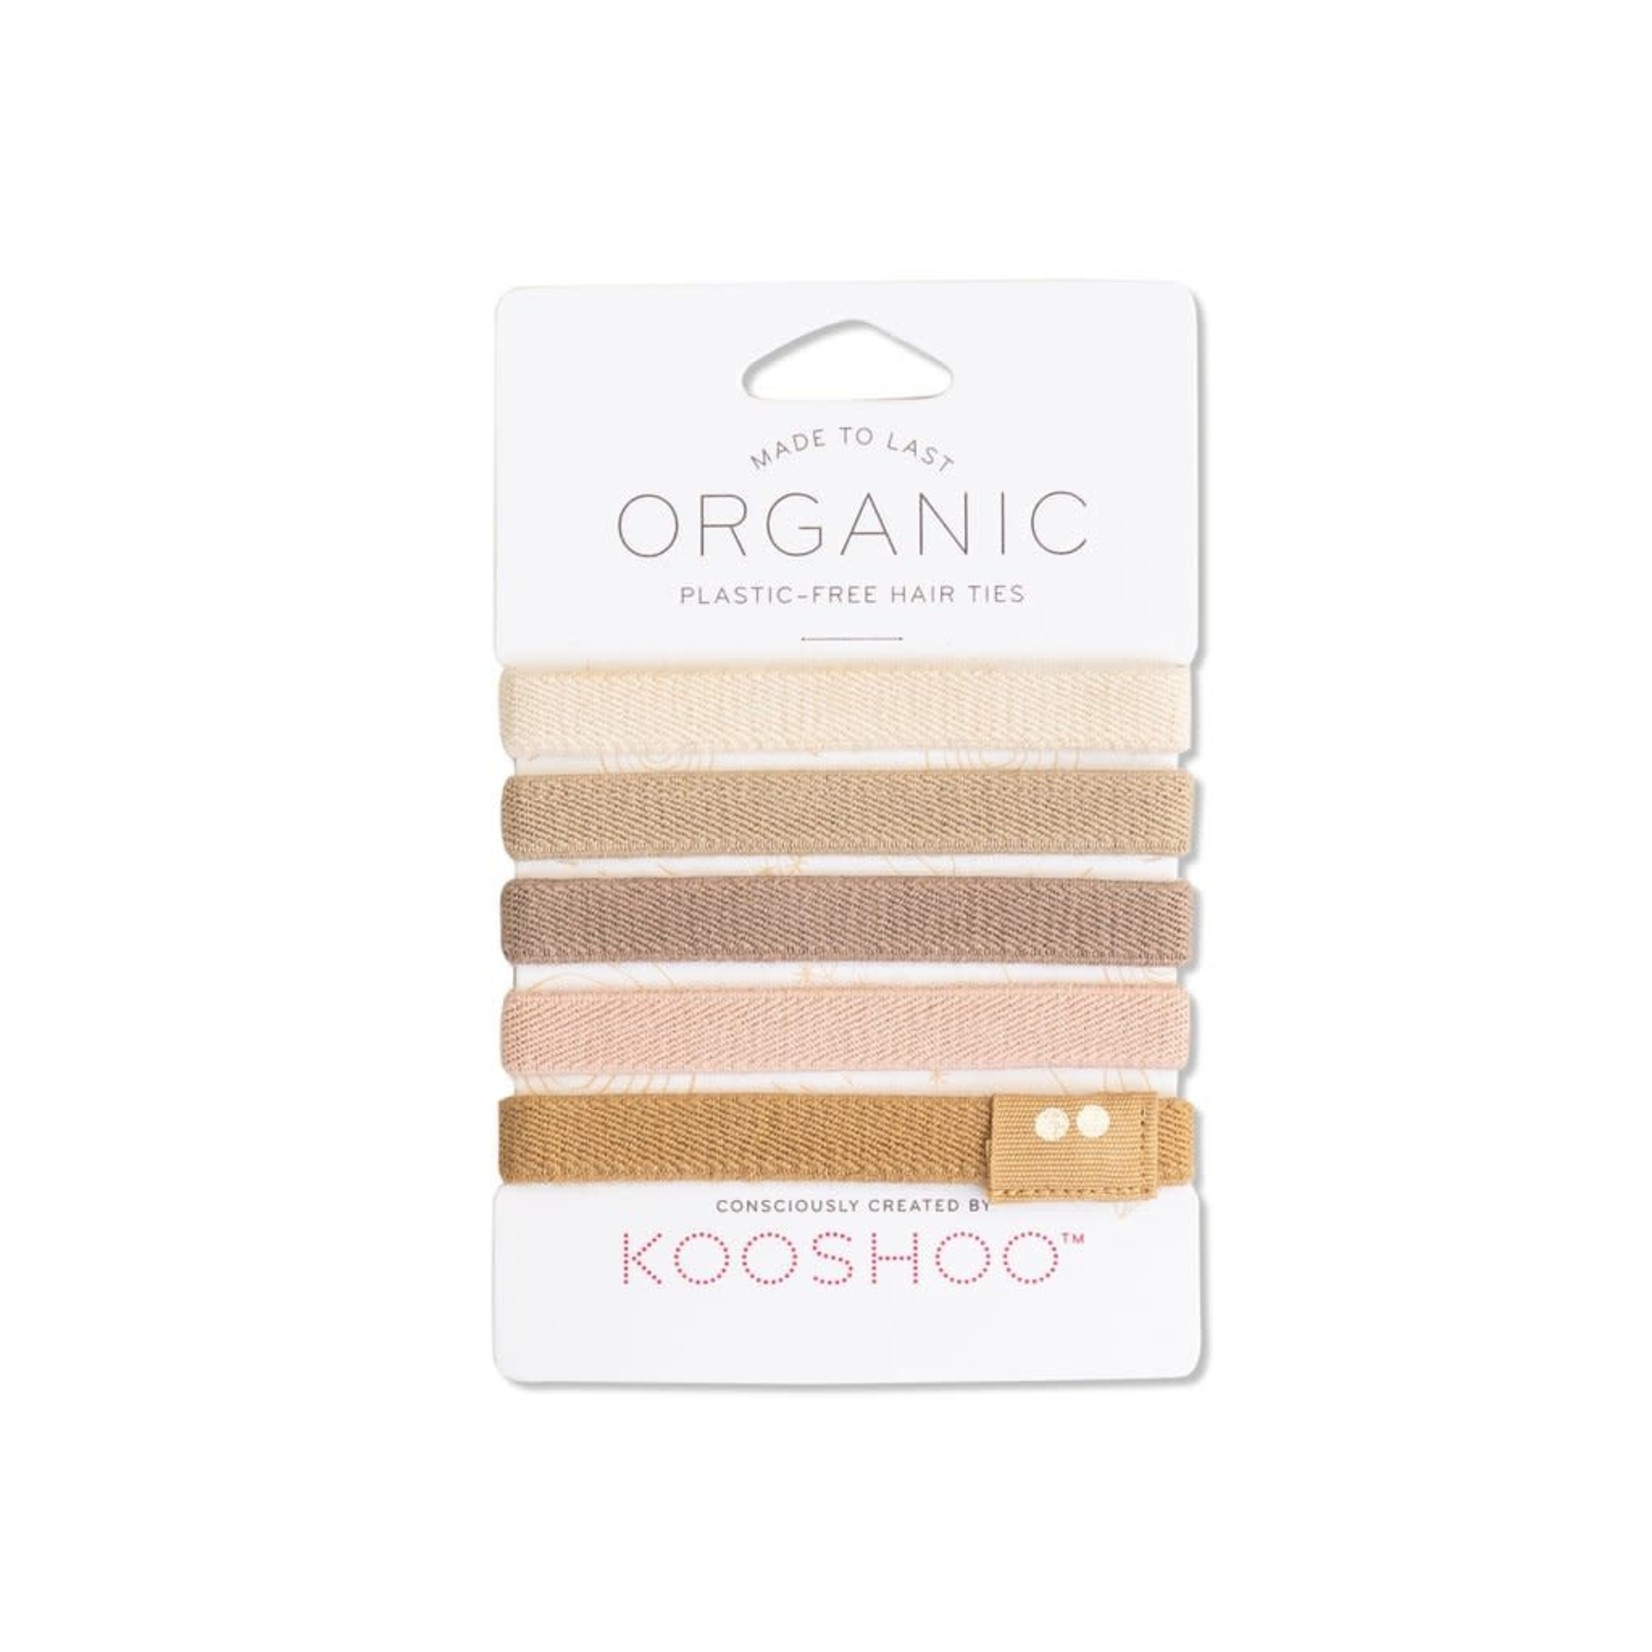 KOOSHOO Organic Hair Ties - Blonde